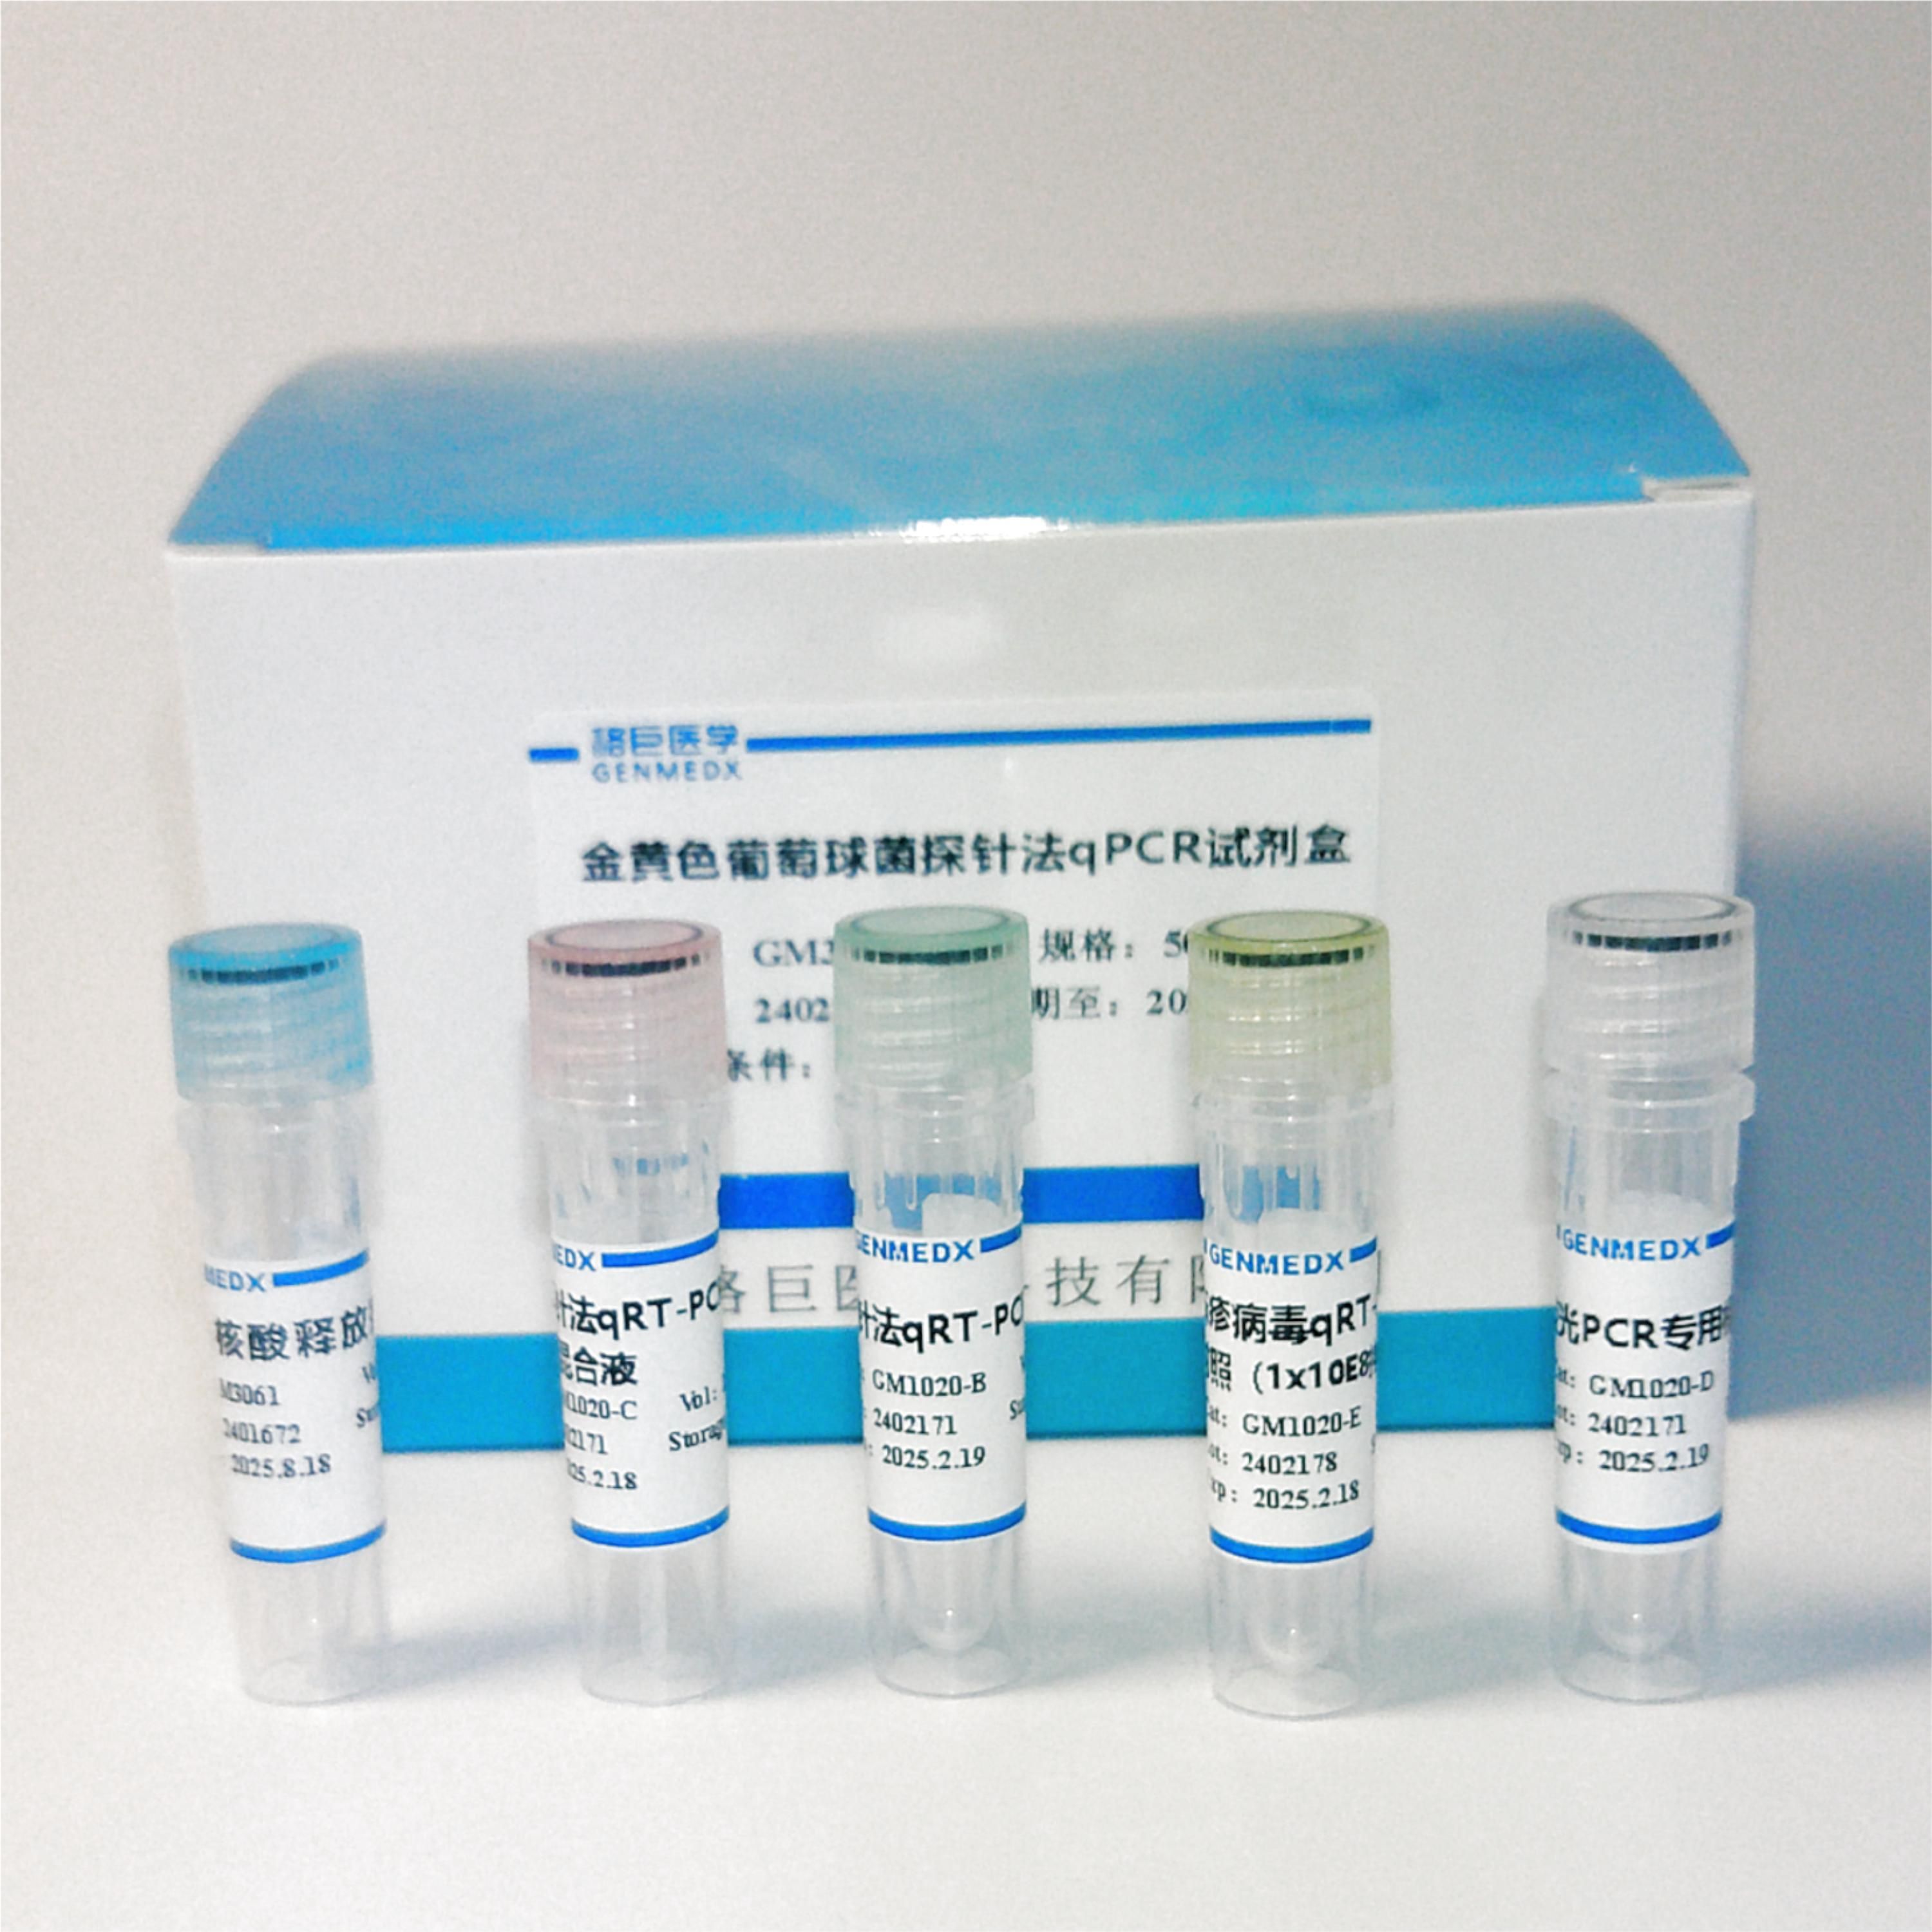 犬腺病毒Ⅰ型(CAV-1)探针法荧光定量PCR试剂盒